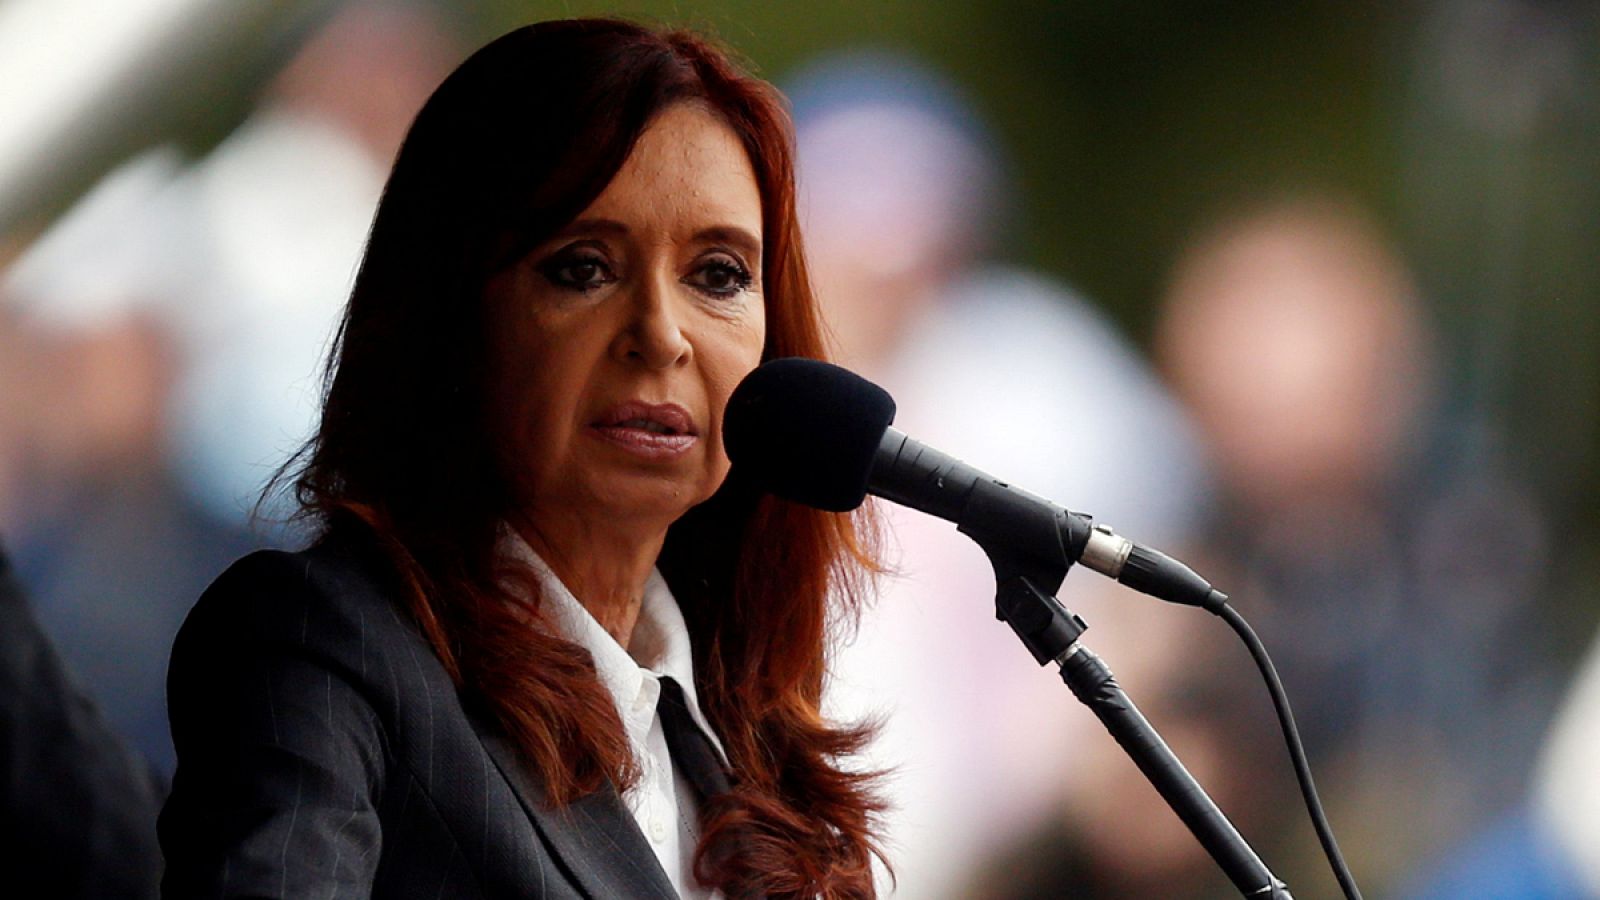 La expresidenta de Argentina, Cristina Fernández de Kirchner, en una imagen de archivo en Buenos Aires en 2013.